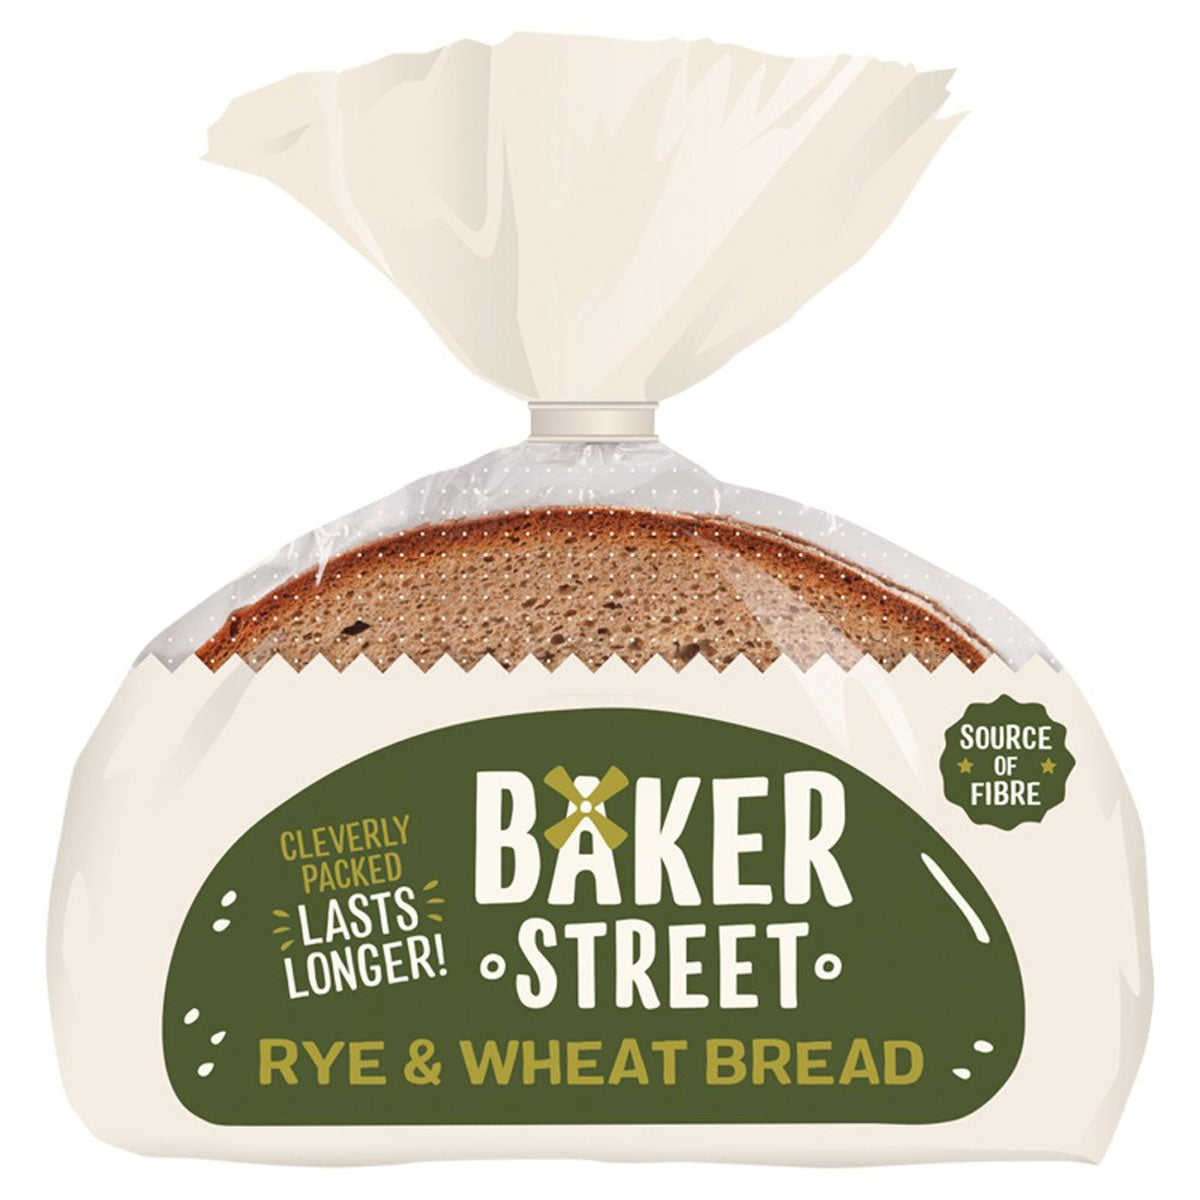 Baker Street - Rye & Wheat Bread - 500g rye & wheat bread.